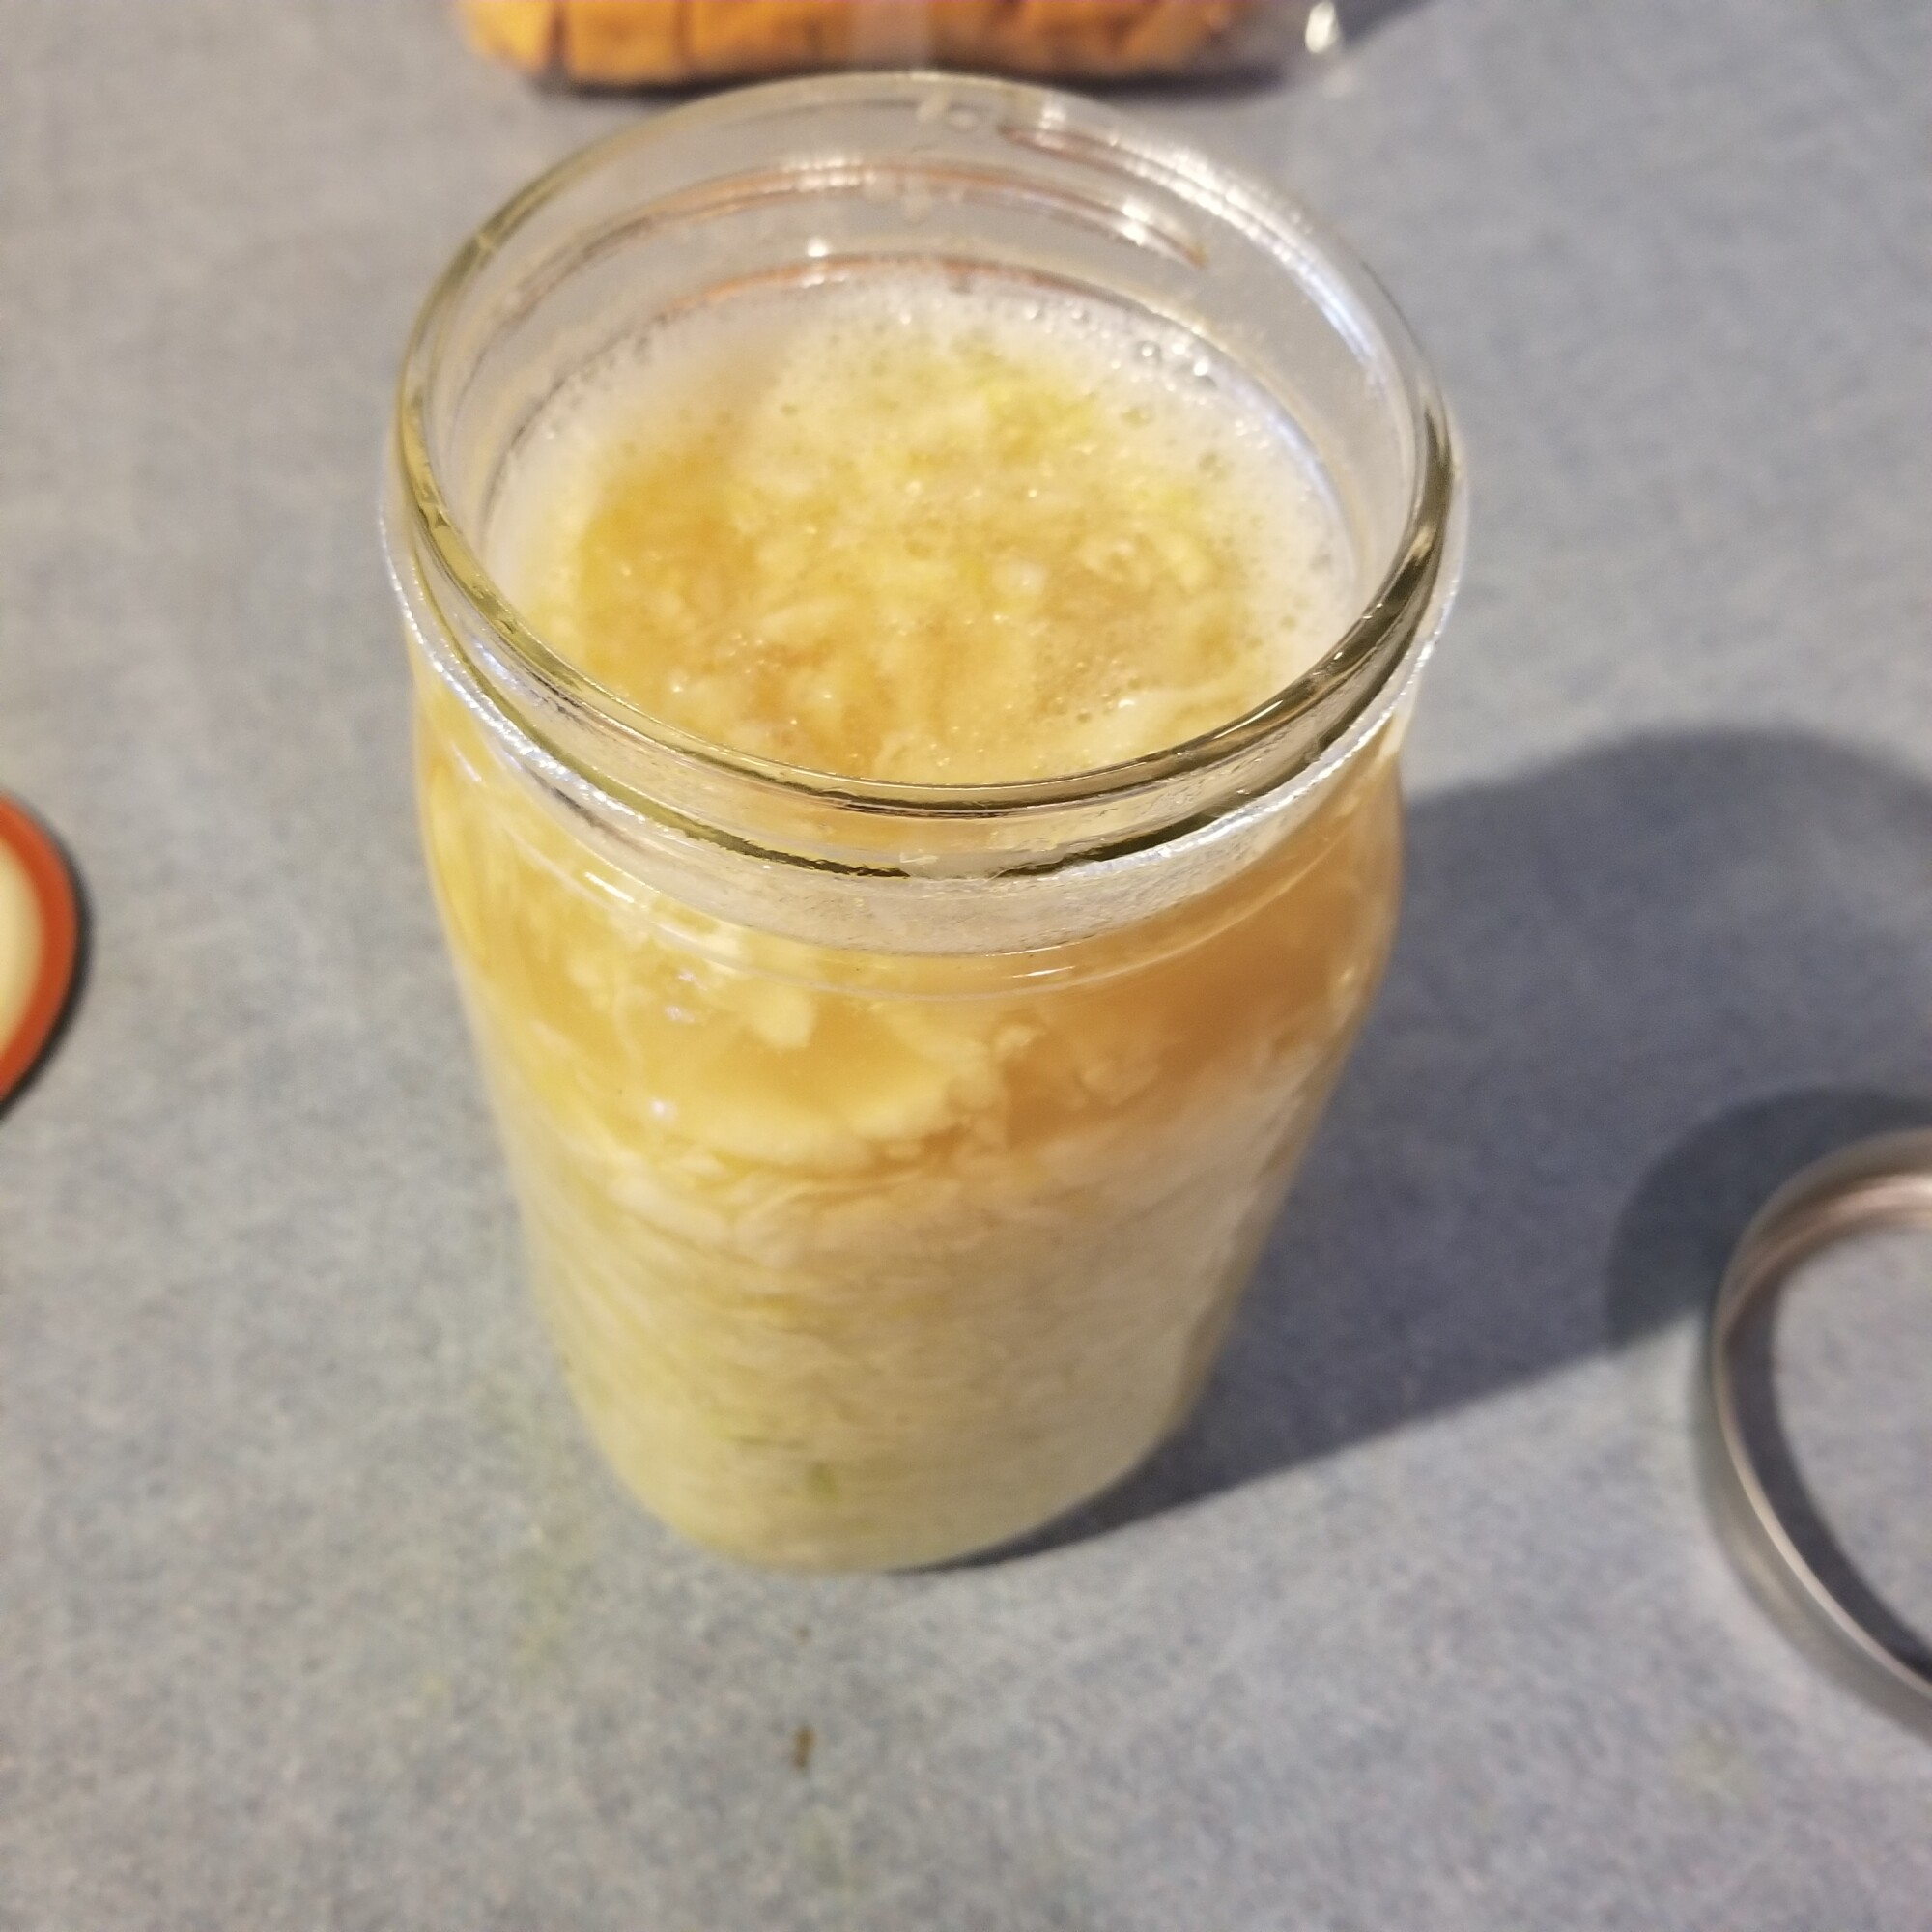 sauerkraut in jar with bubbles